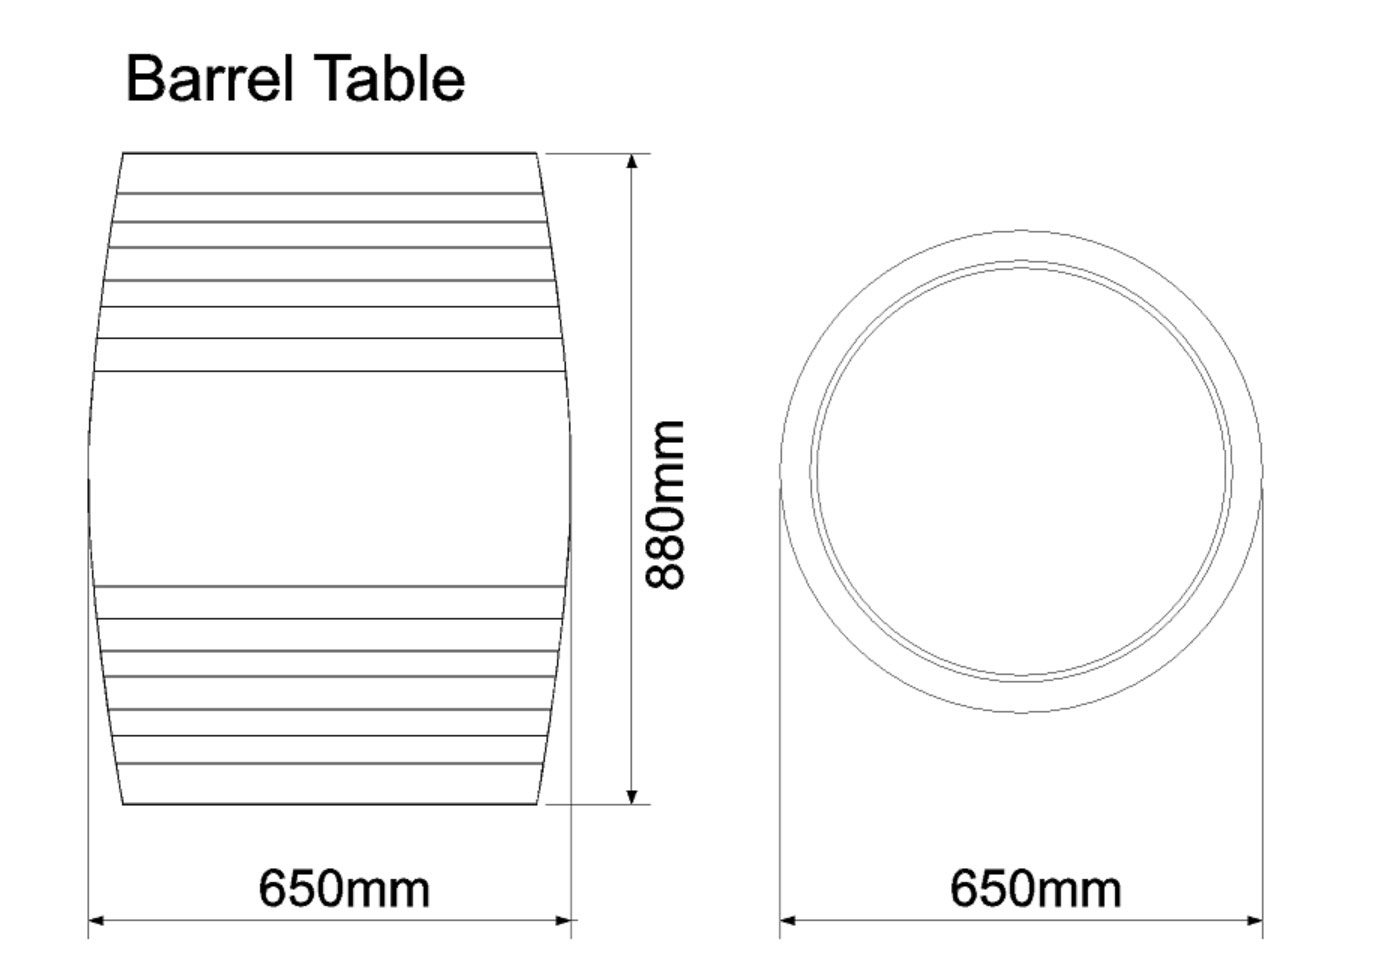 Barrel Table Dimensions